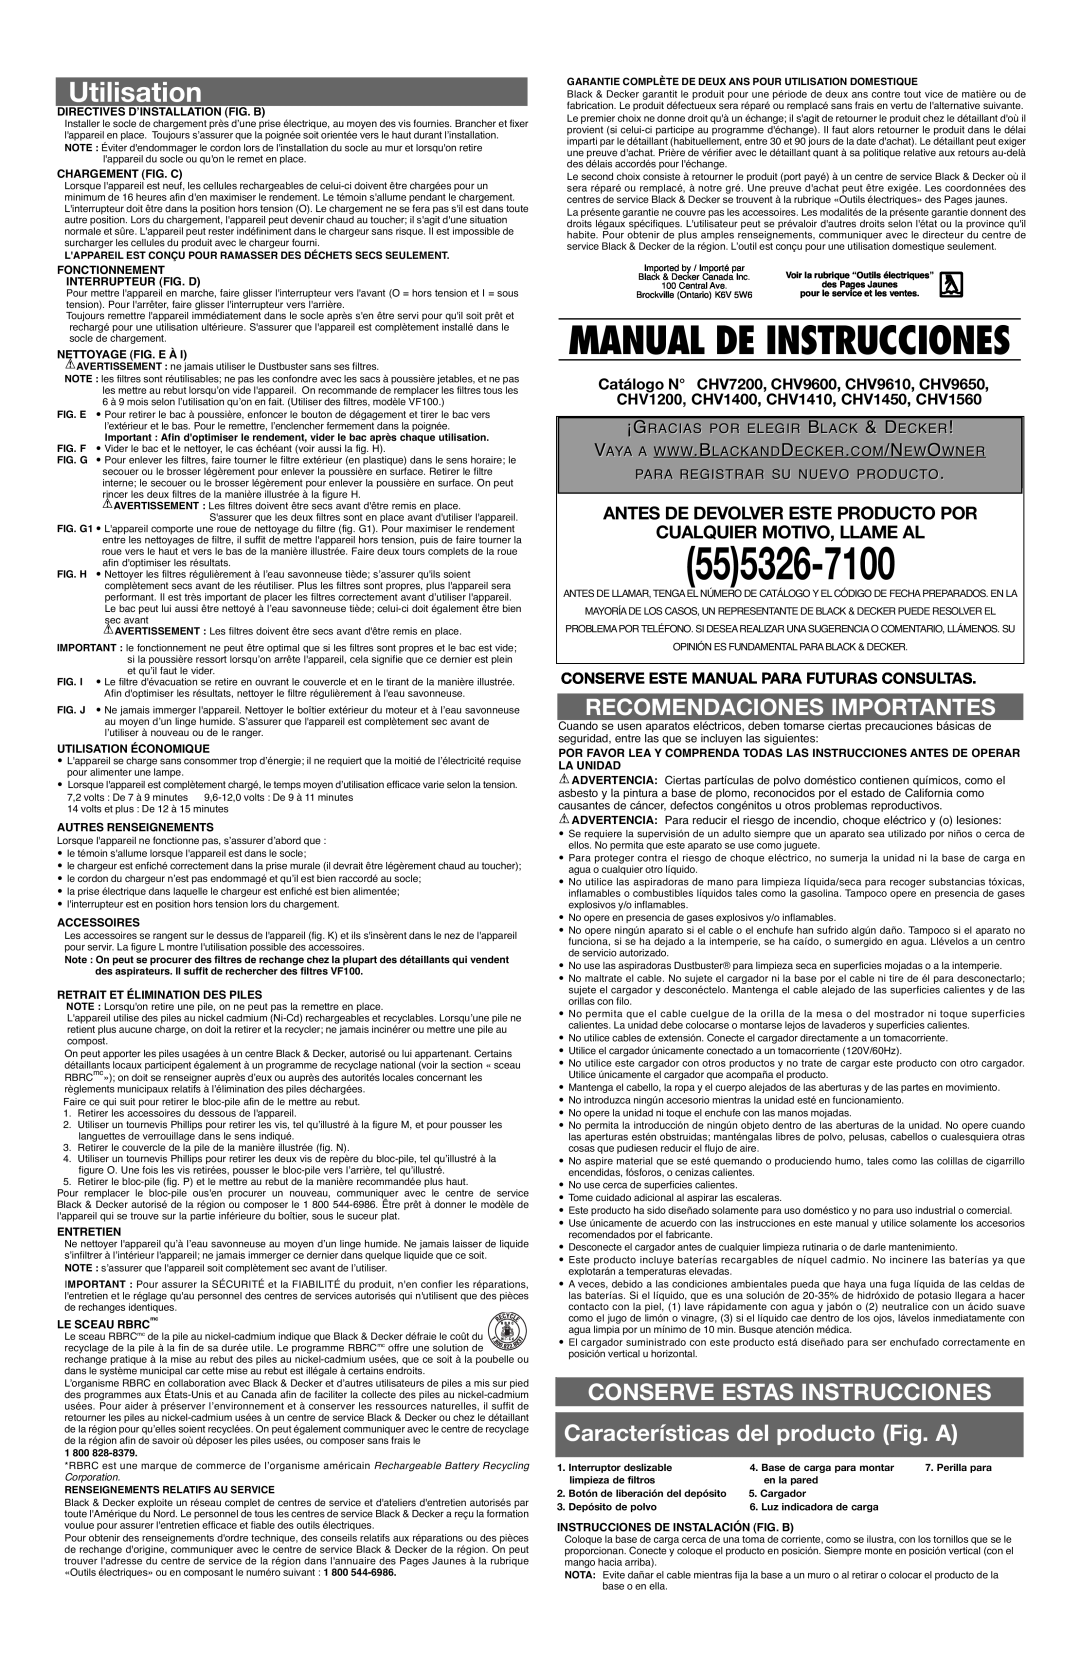 Black & Decker CHV7200 Utilisation, Recomendaciones Importantes, Conserve Este Manual Para Futuras Consultas, 555326-7100 